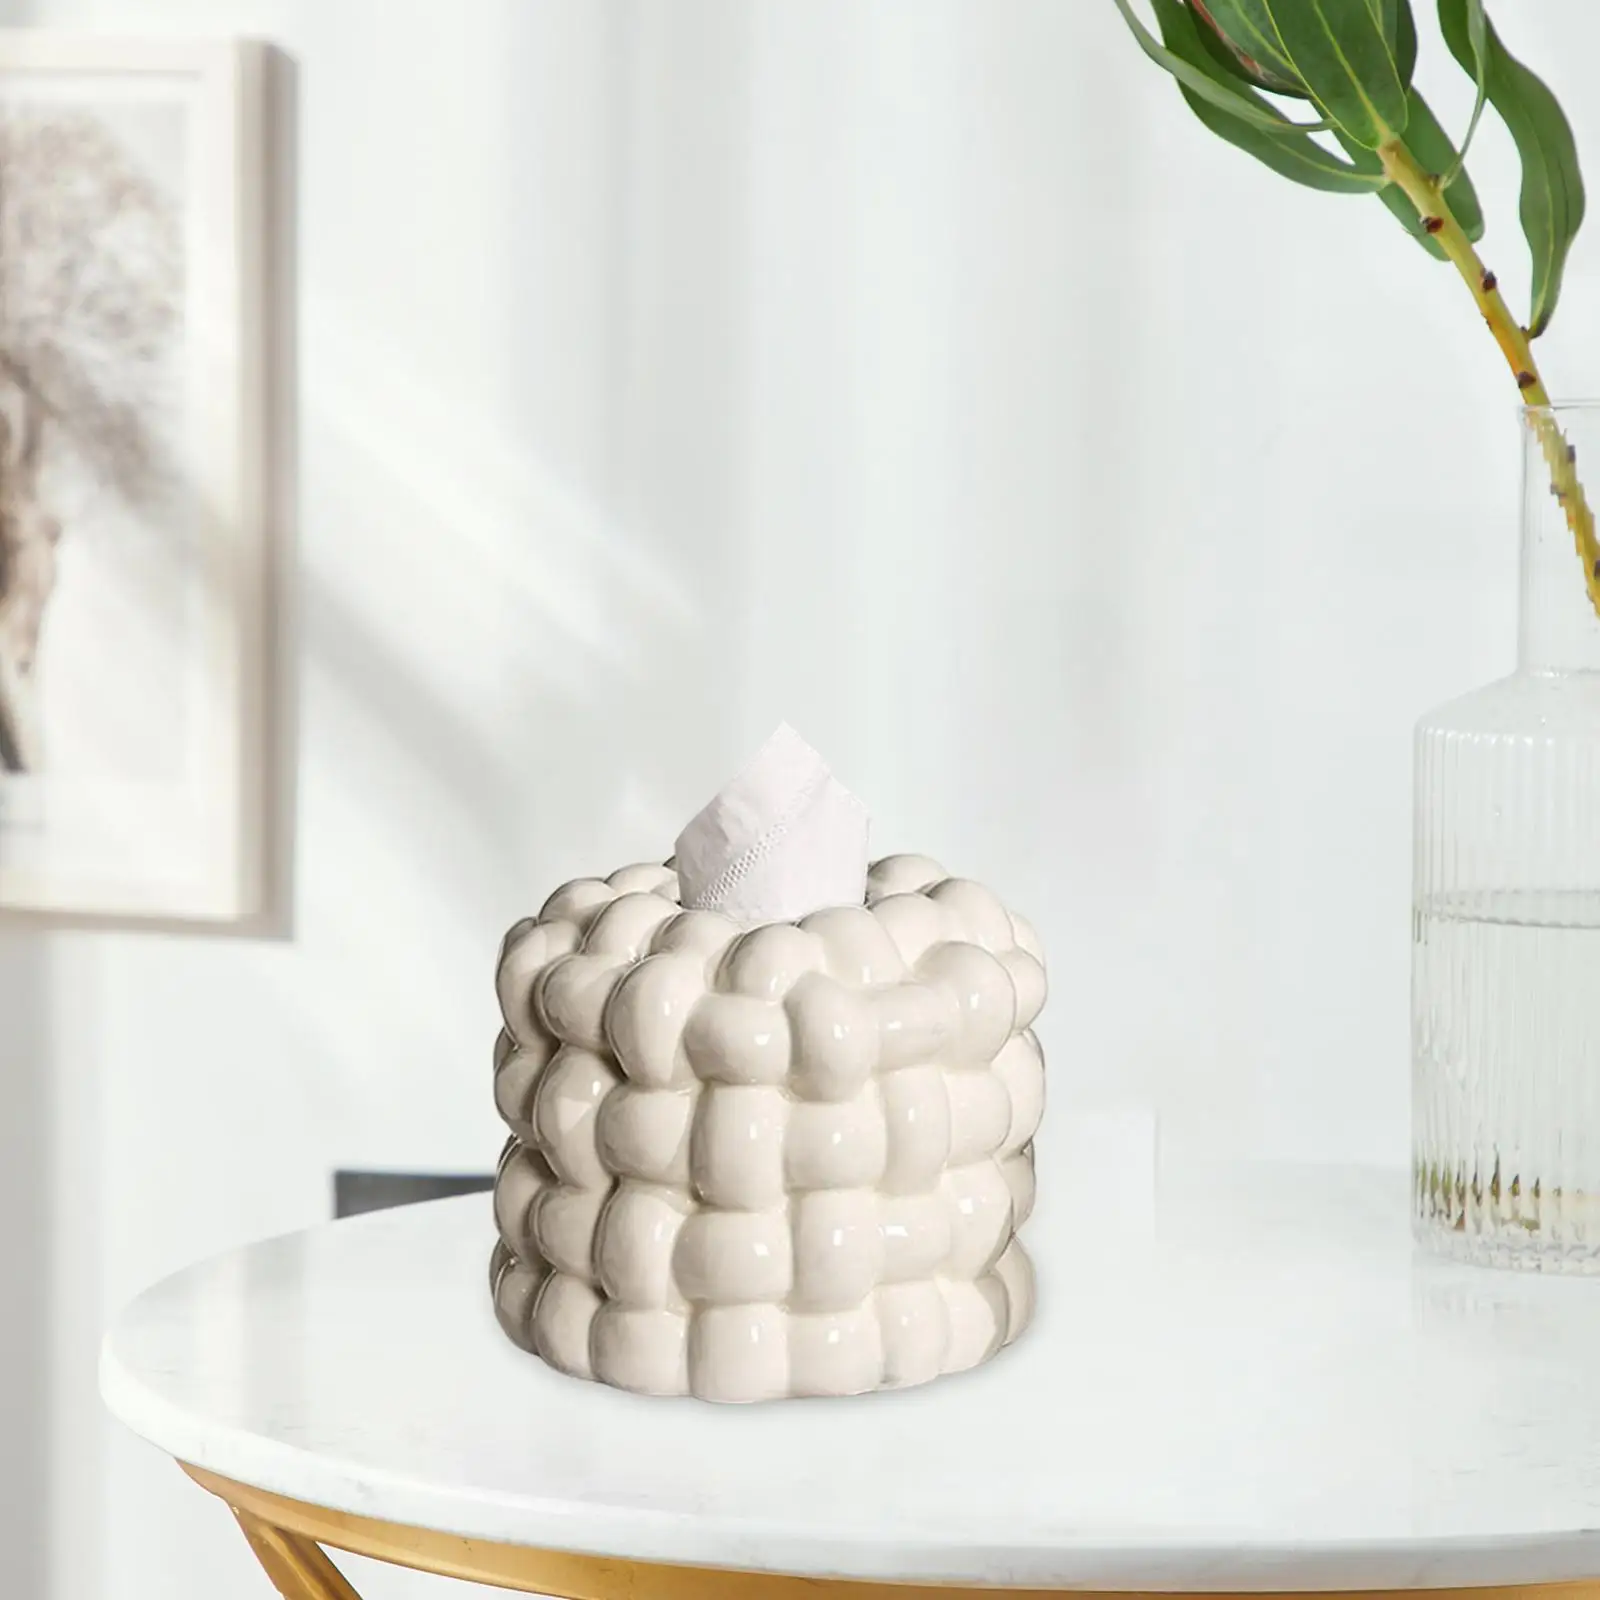 Napkin Holder Organizer Ceramic Tissue Holder for Bathroom Bedroom Tea Table